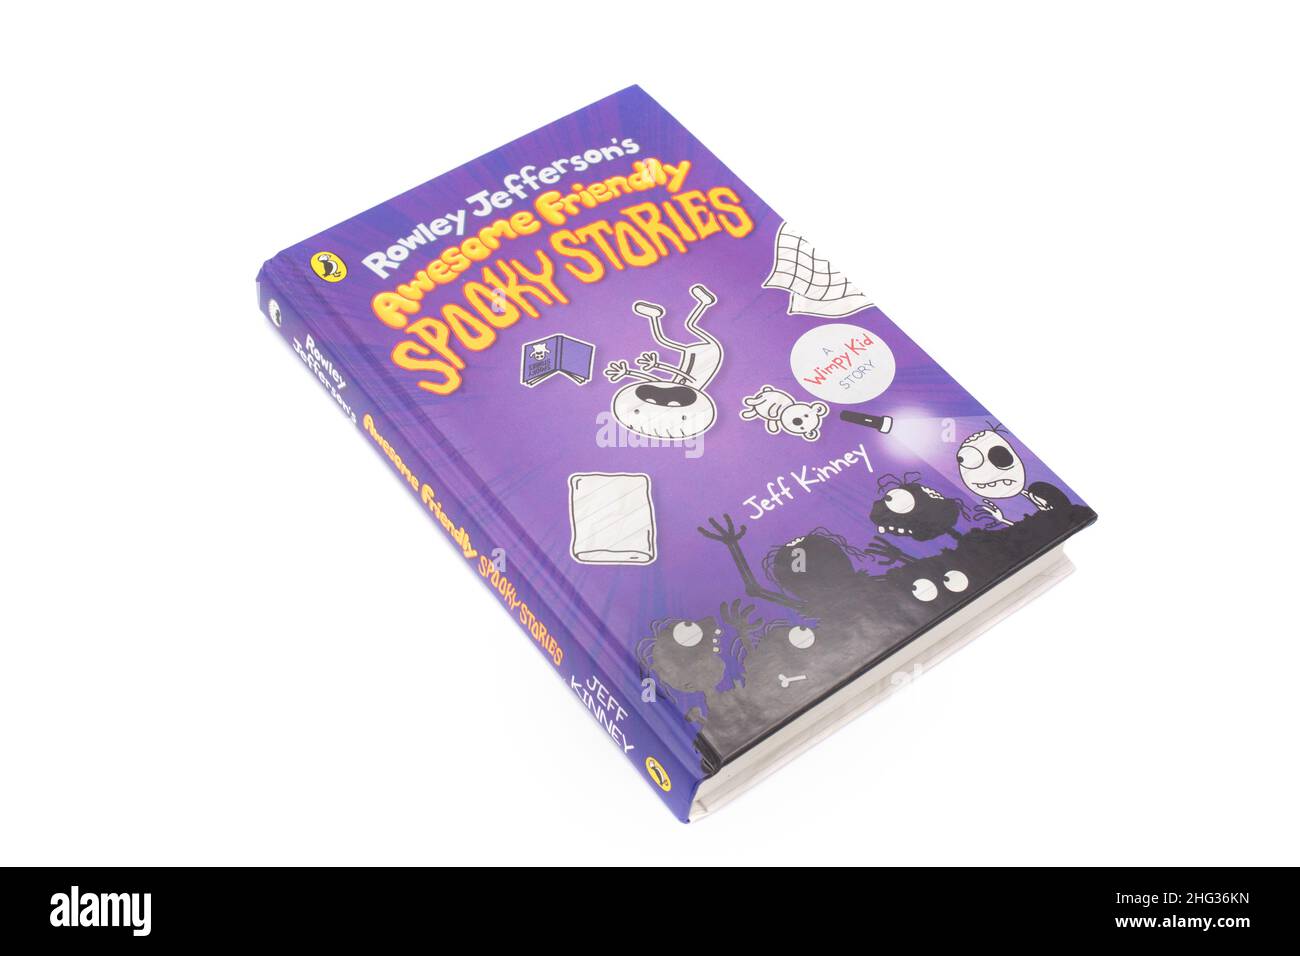 Das Buch, Rowley Jeffereson's Awesome Friendly Spooky Stories von Jeff Kinney Stockfoto